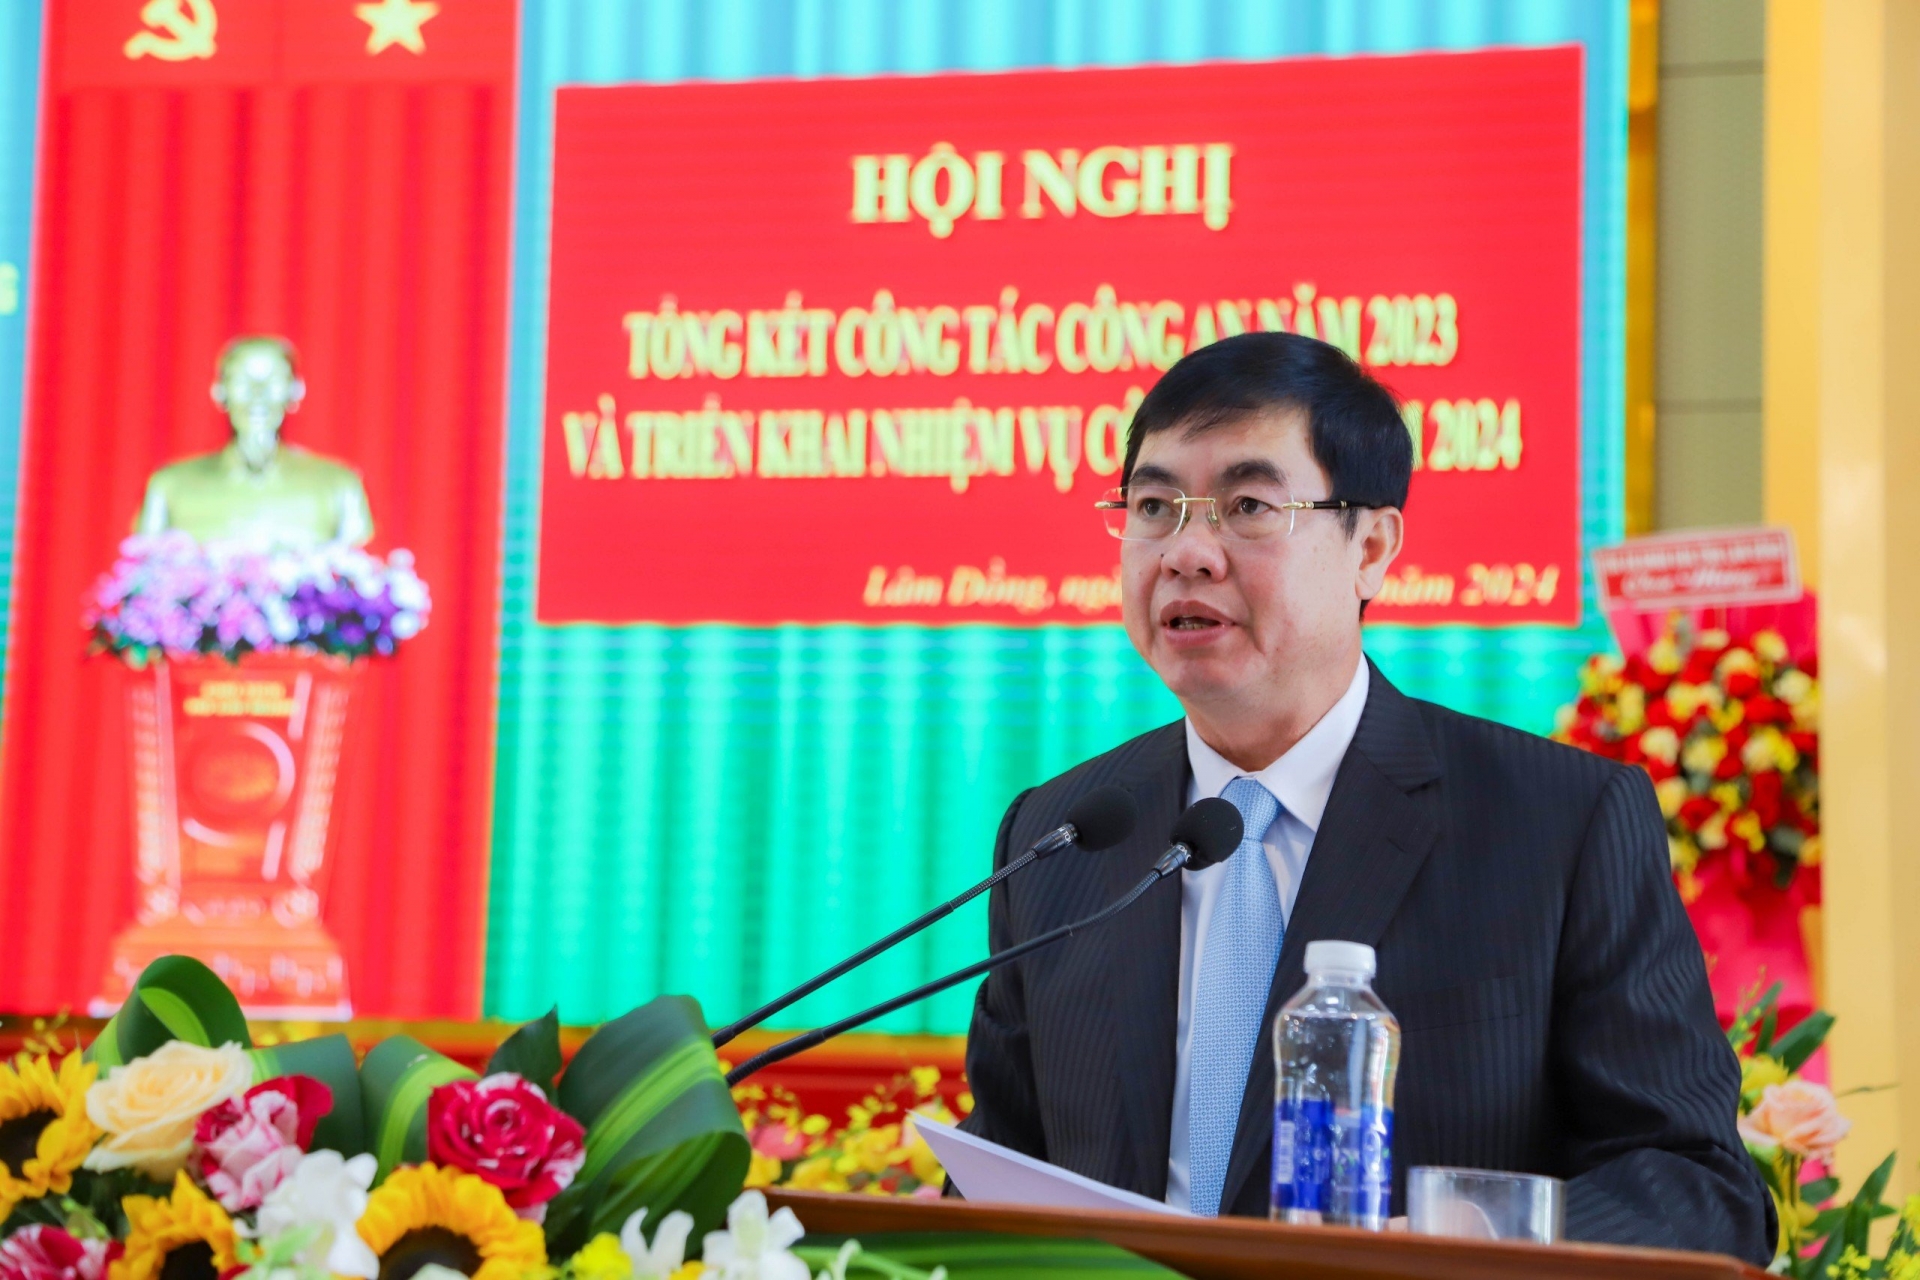 Đồng chí Trần Đình Văn - Phó Bí thư thường trực tỉnh ủy phát biểu chỉ đạo tại hội nghị